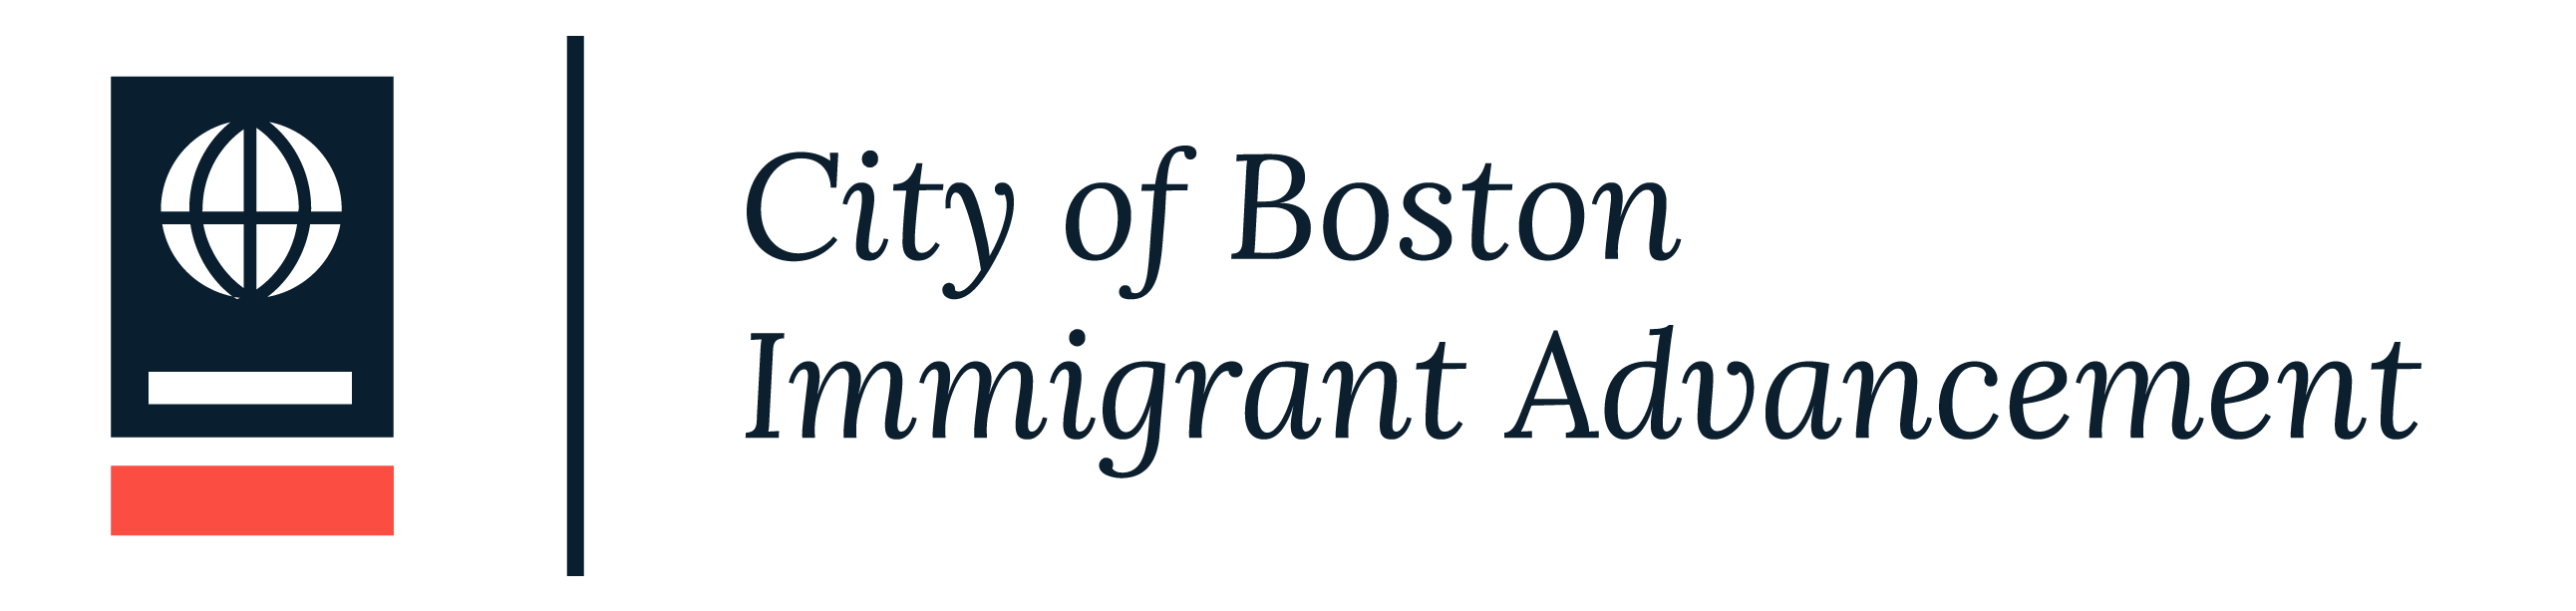 City of Boston Immigrant Advancement